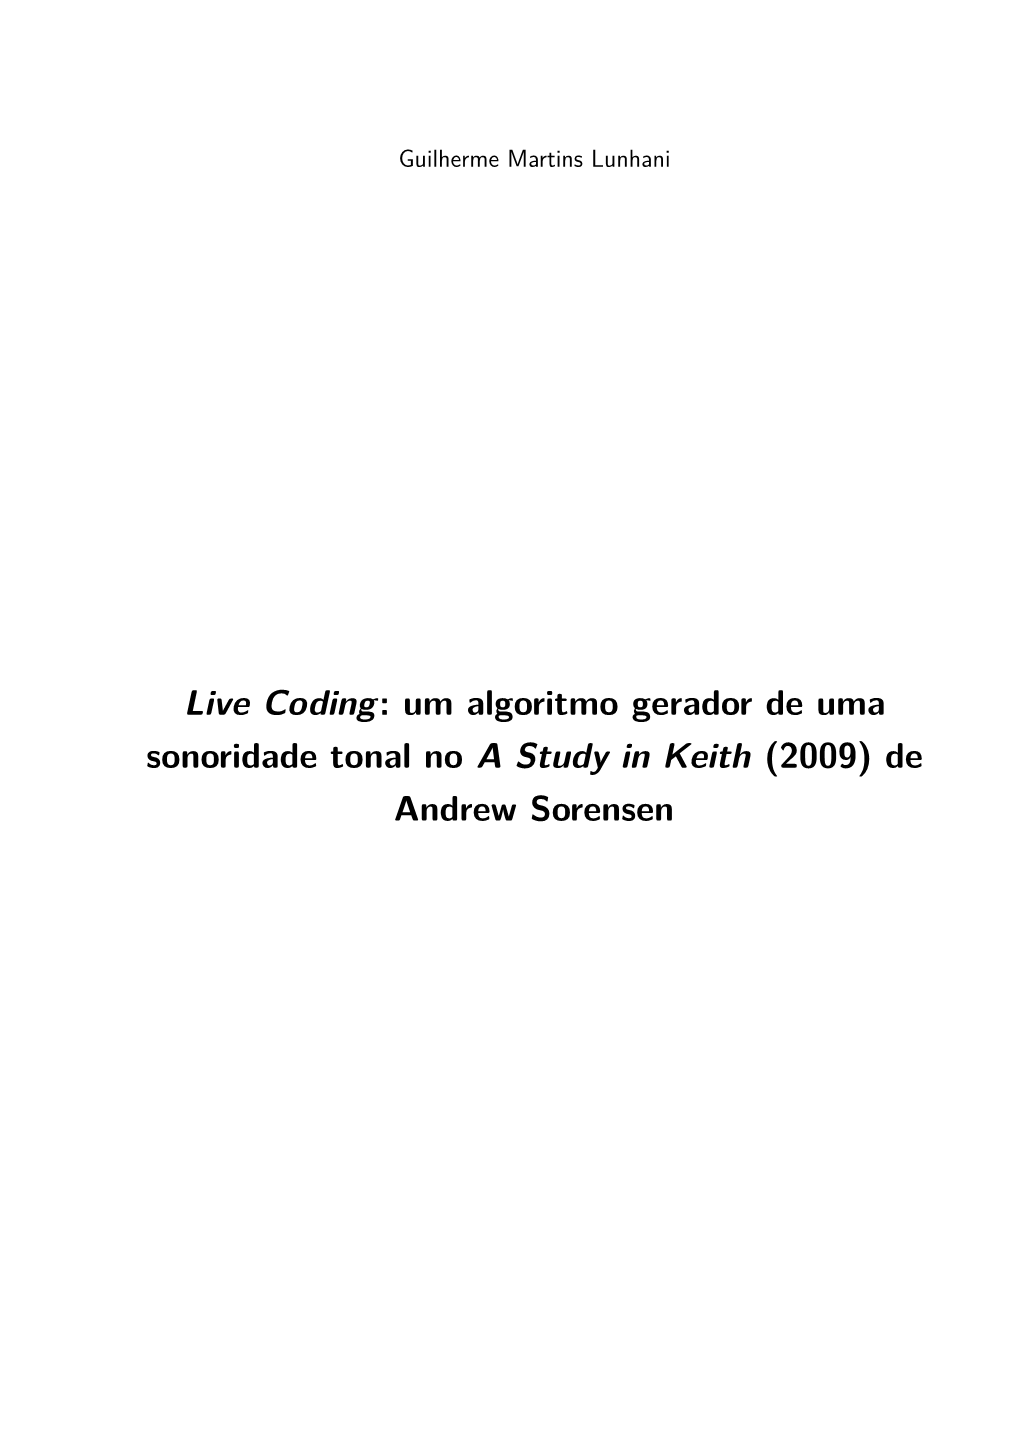 Live Coding: Um Algoritmo Gerador De Uma Sonoridade Tonal No a Study in Keith (2009) De Andrew Sorensen